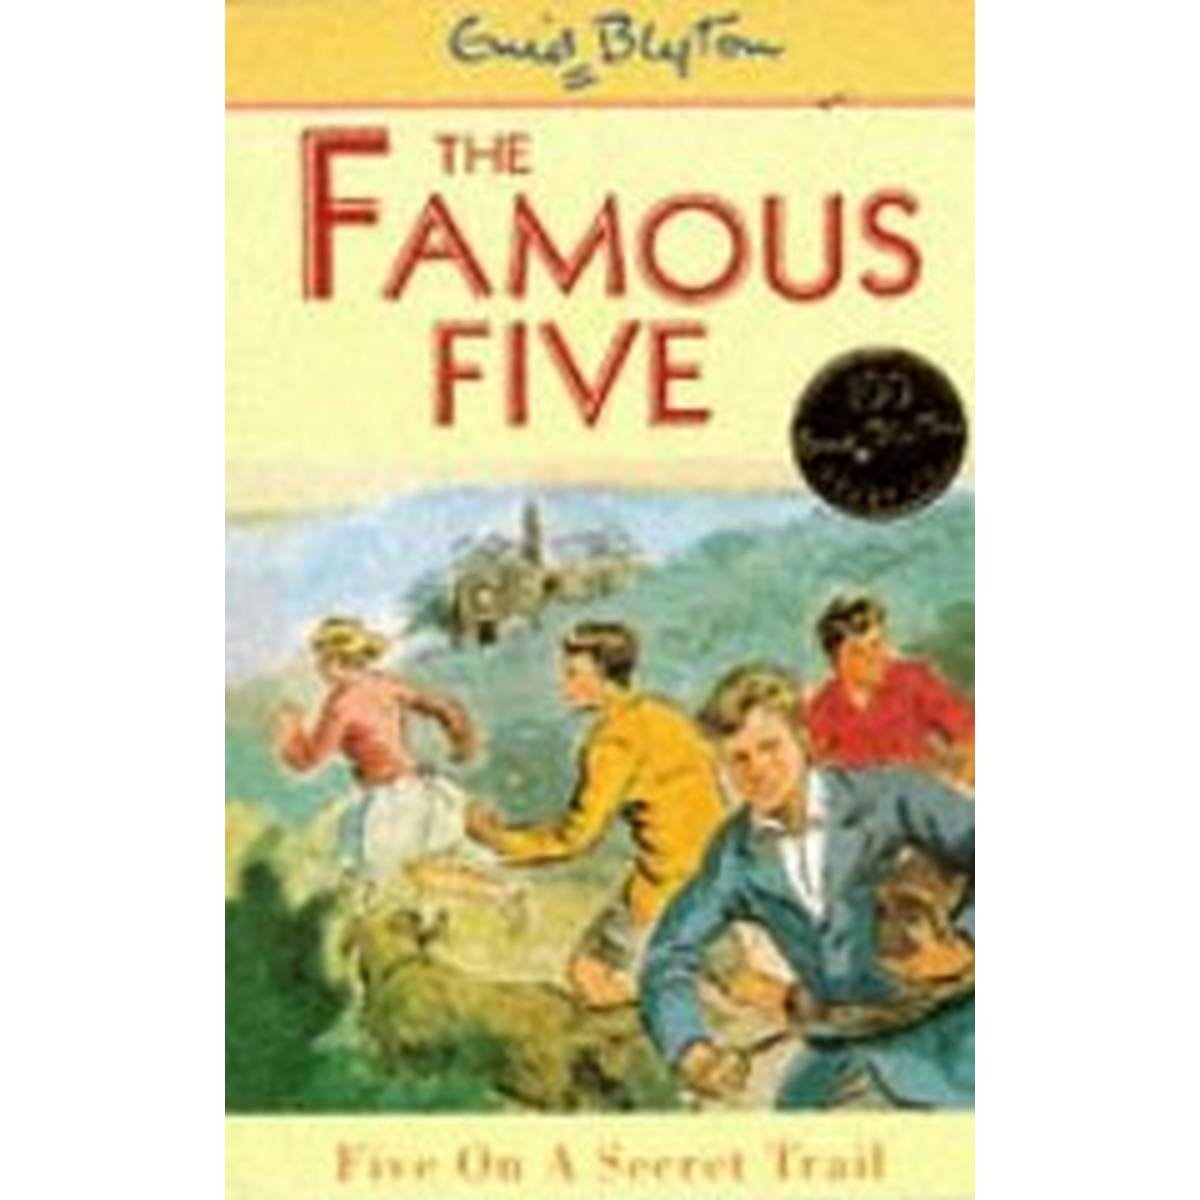 Five on a Secret Trail (Famous Five) 15